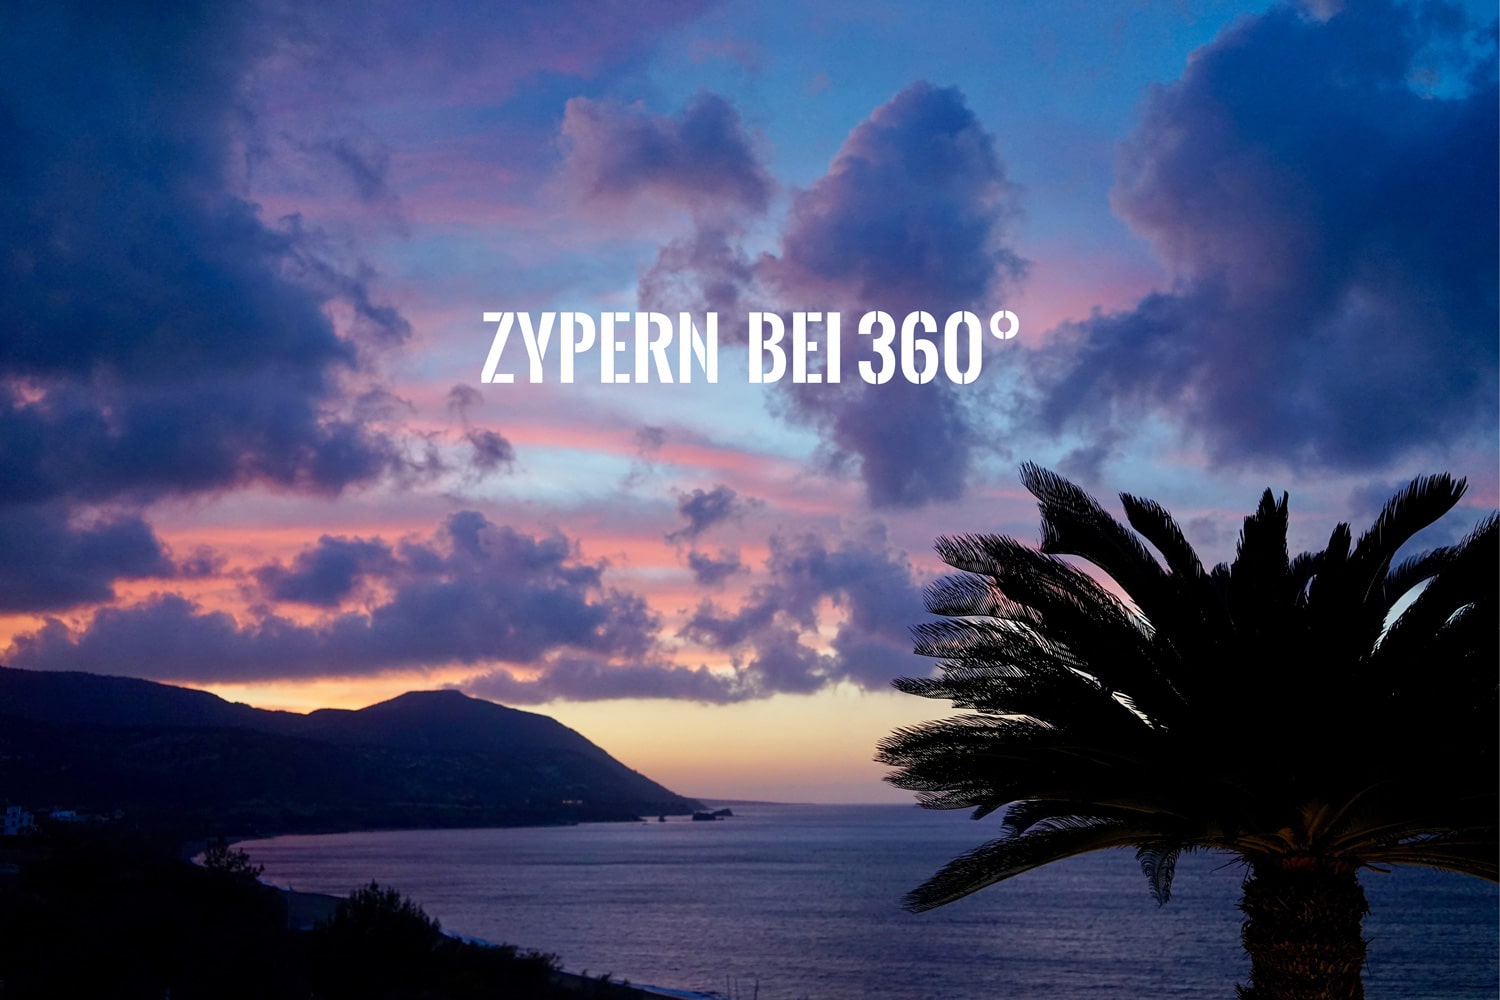 Zypern bei 360° wunderschöne Orte auf Zypern